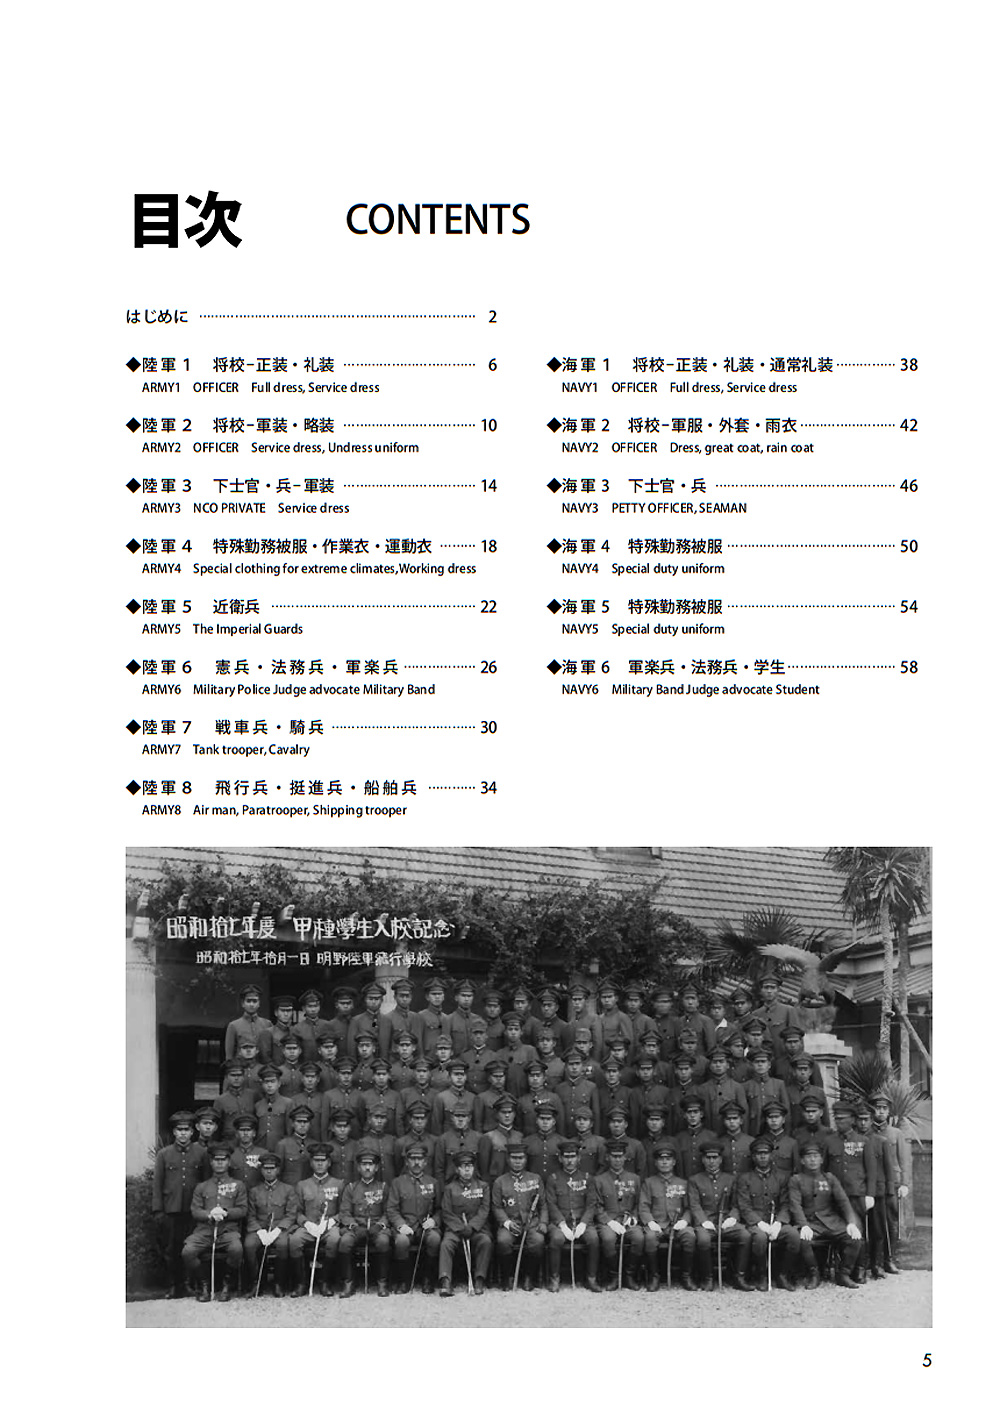 新装版 日本の軍装 1930-1945 本 (大日本絵画 戦車関連書籍 No.23367-5) 商品画像_1